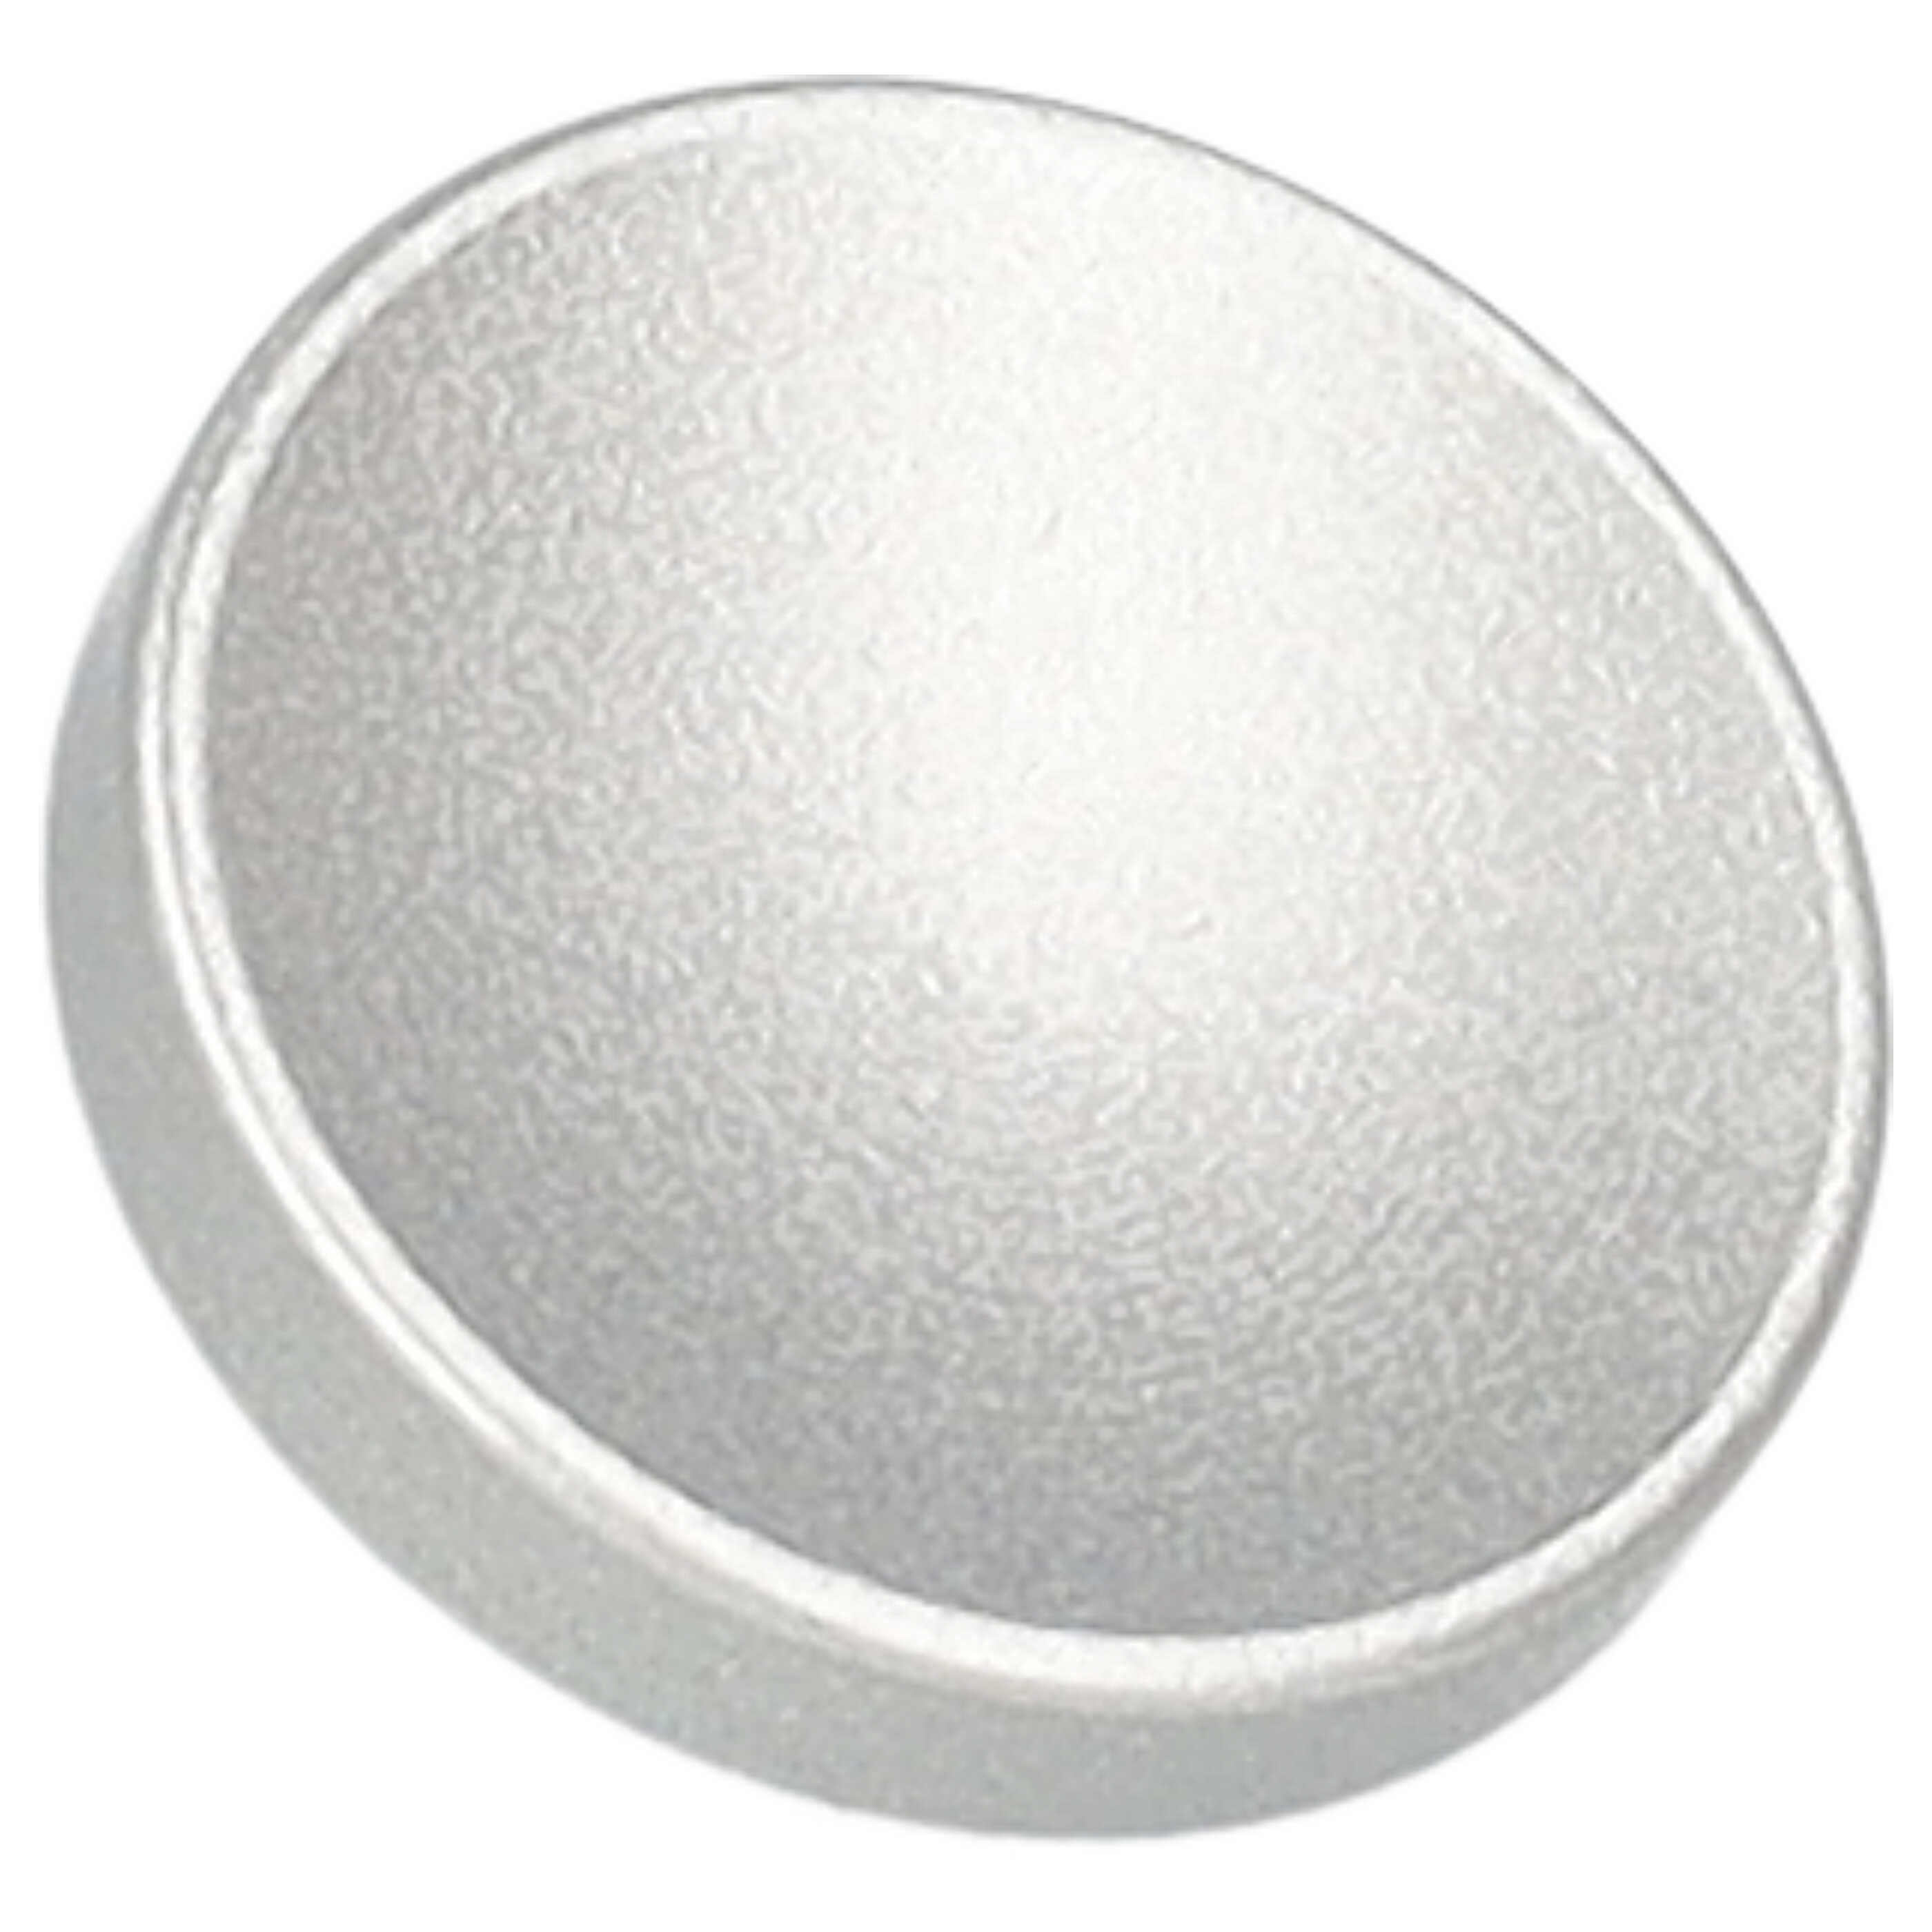 Przycisk spustu migawki do aparatu X-E1 Fujifilm - metal, srebrny